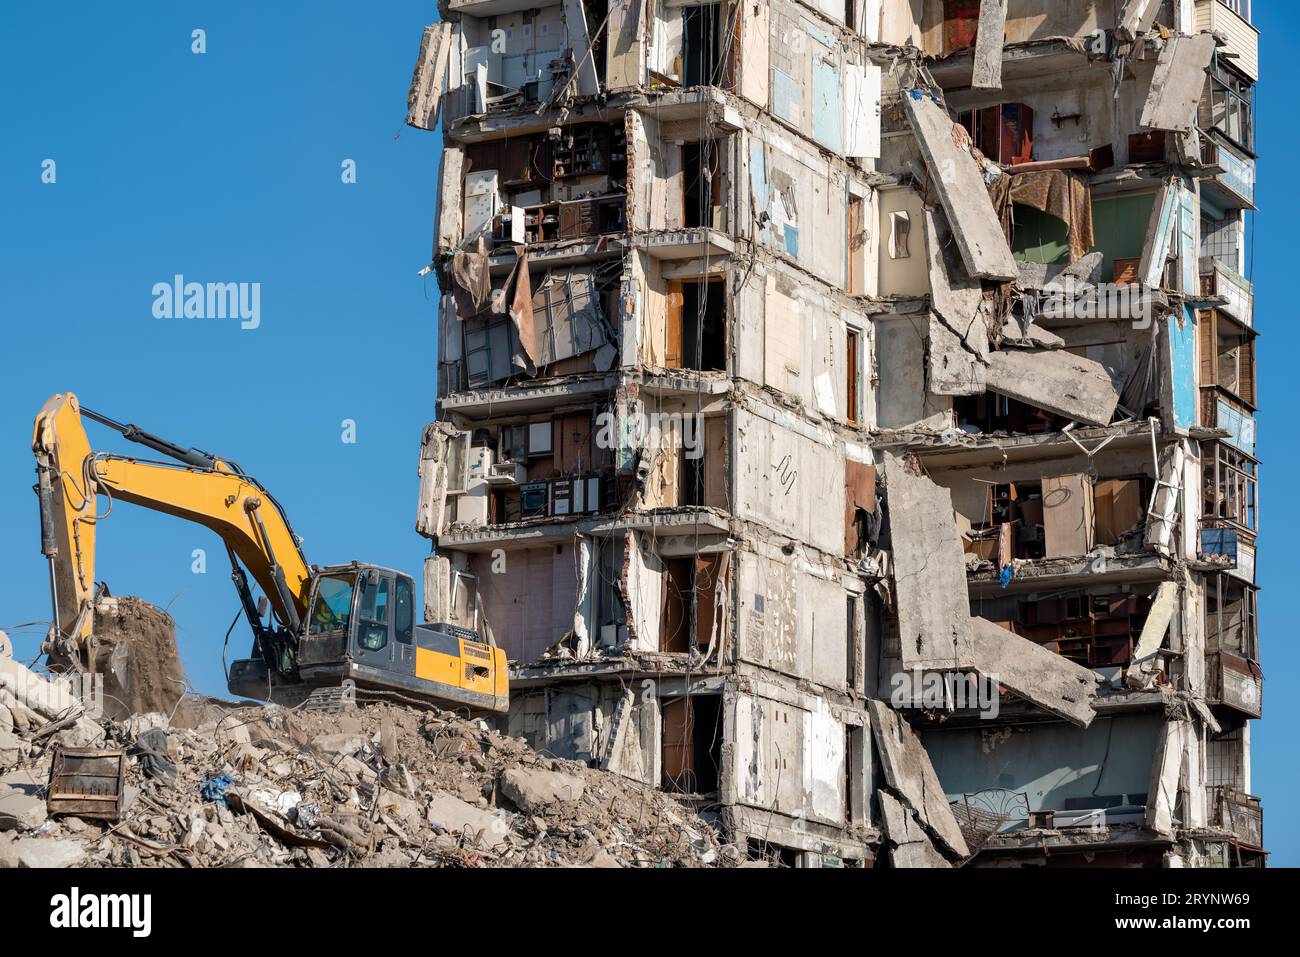 Le matériel de construction détruit les maisons endommagées pendant la guerre en Ukraine Banque D'Images